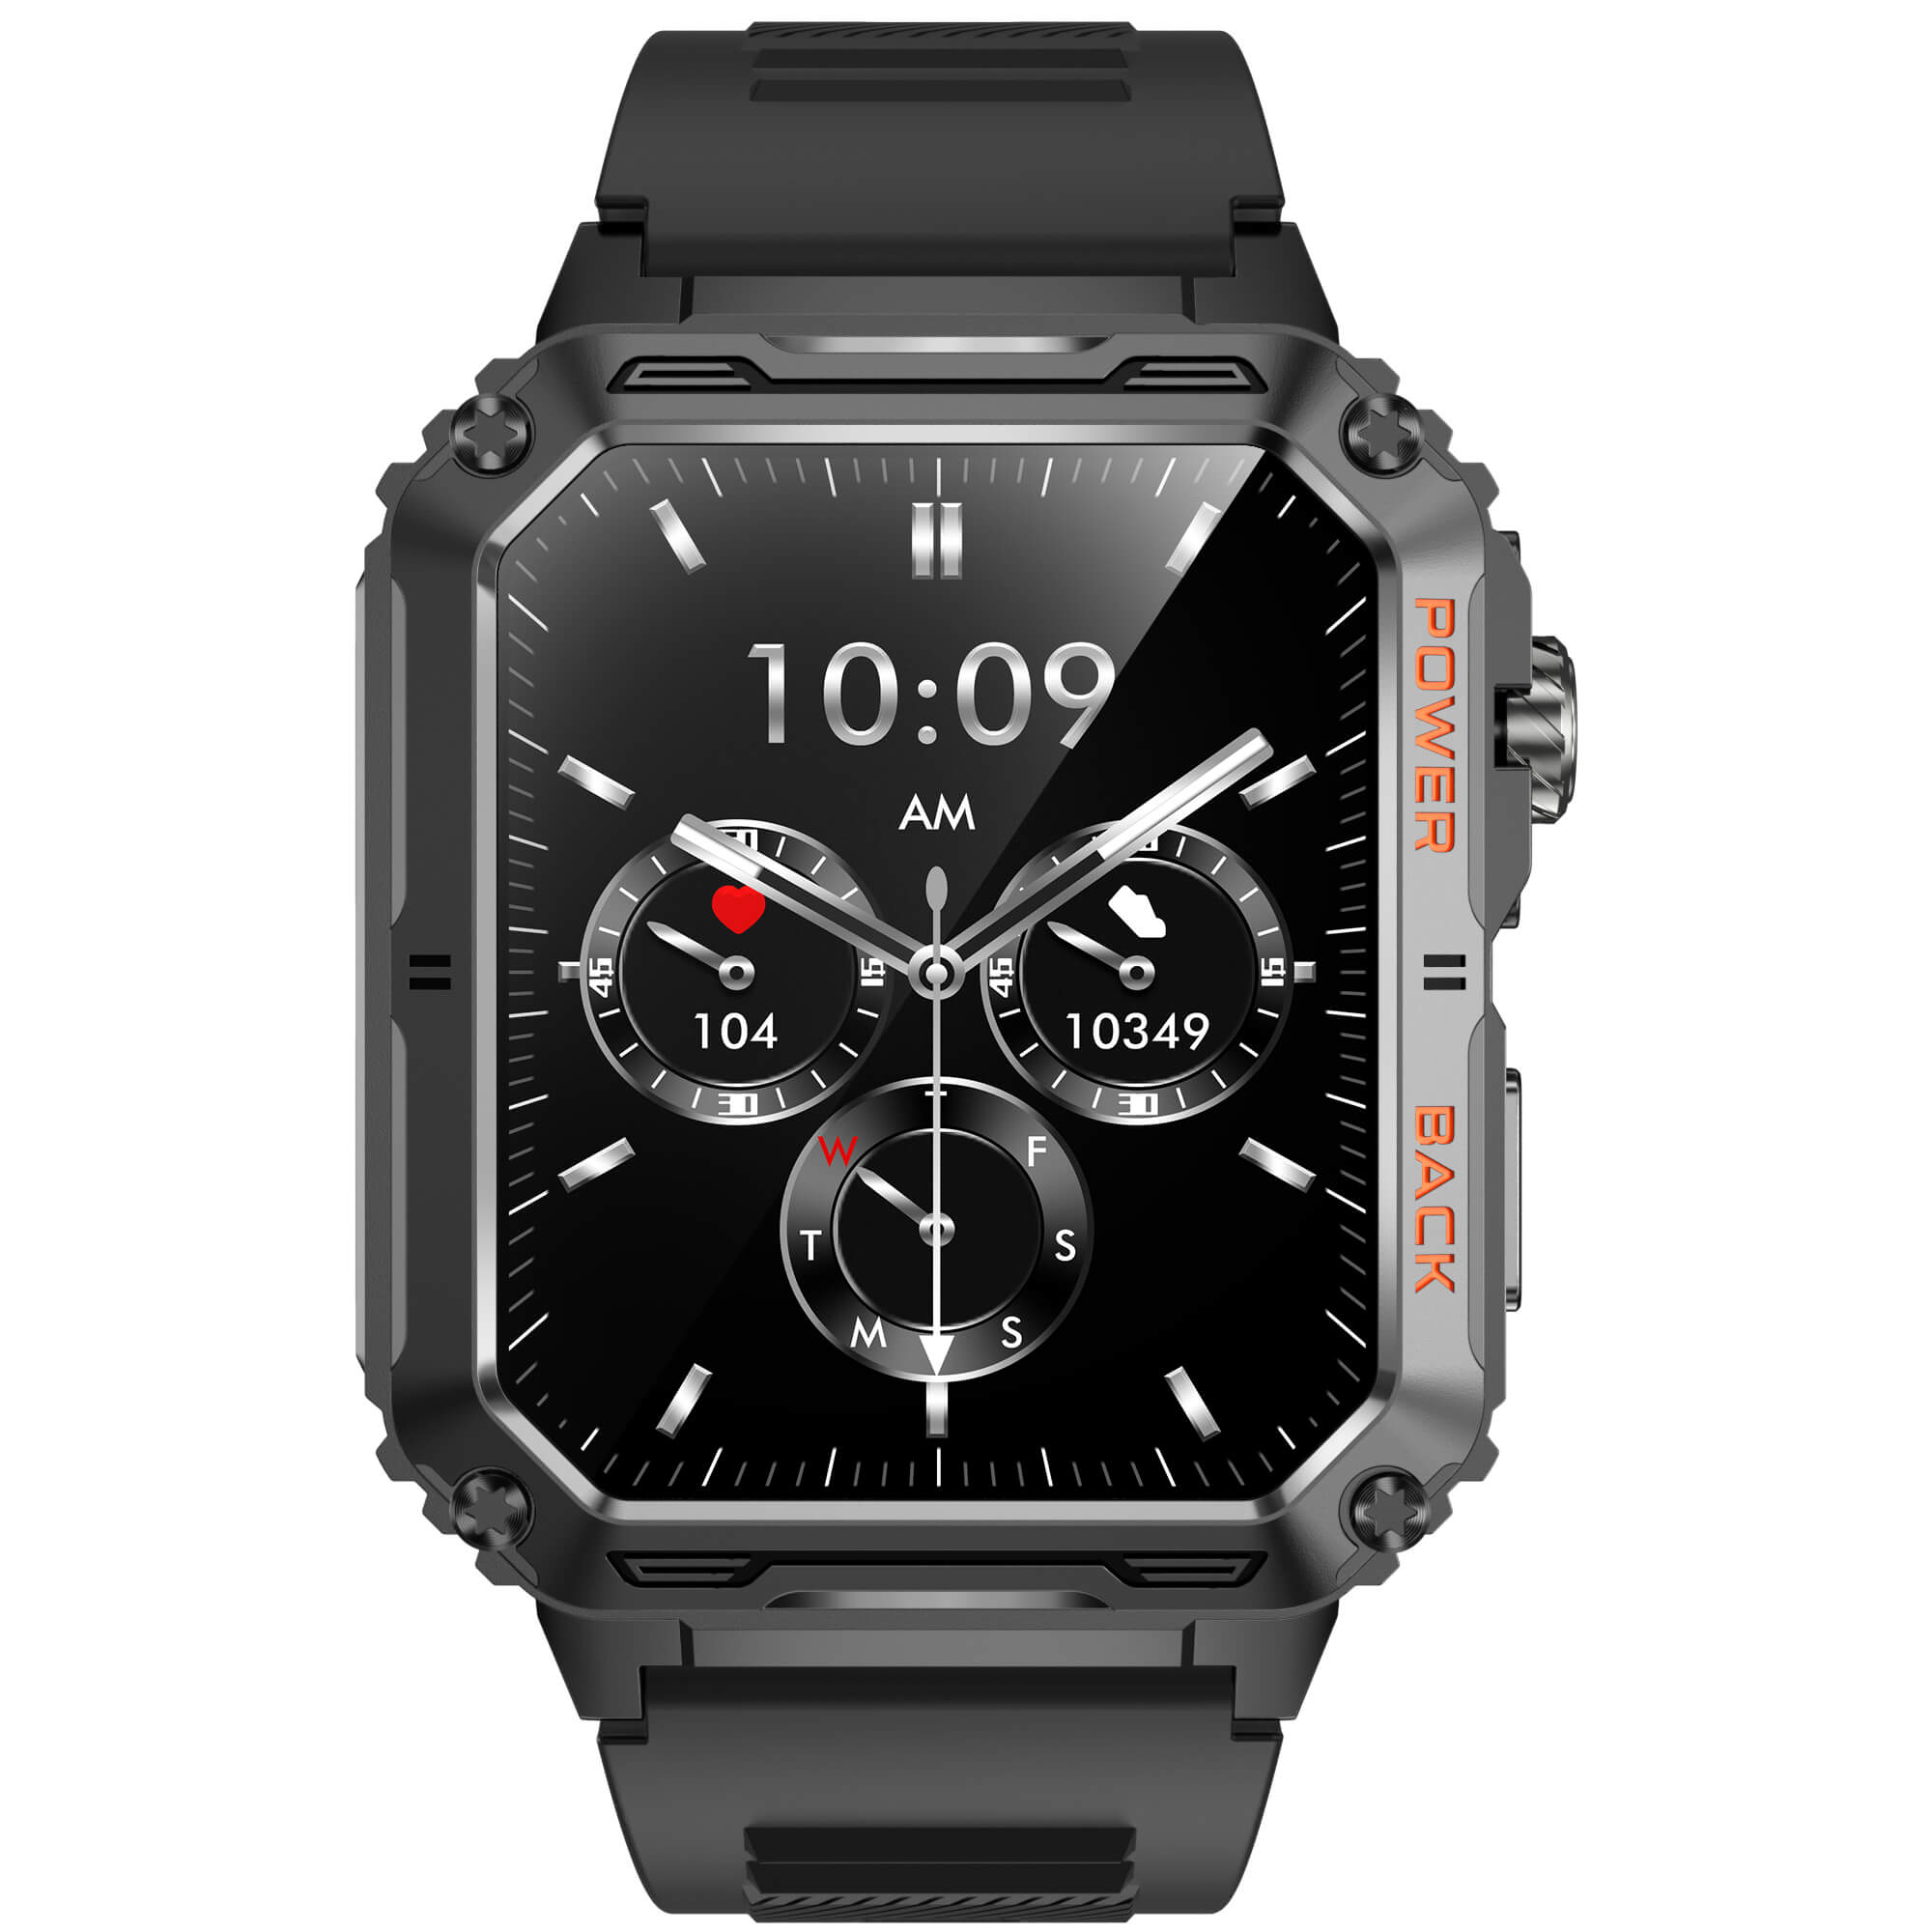 RAPTOR - Tactical Smart Watch 380mAh